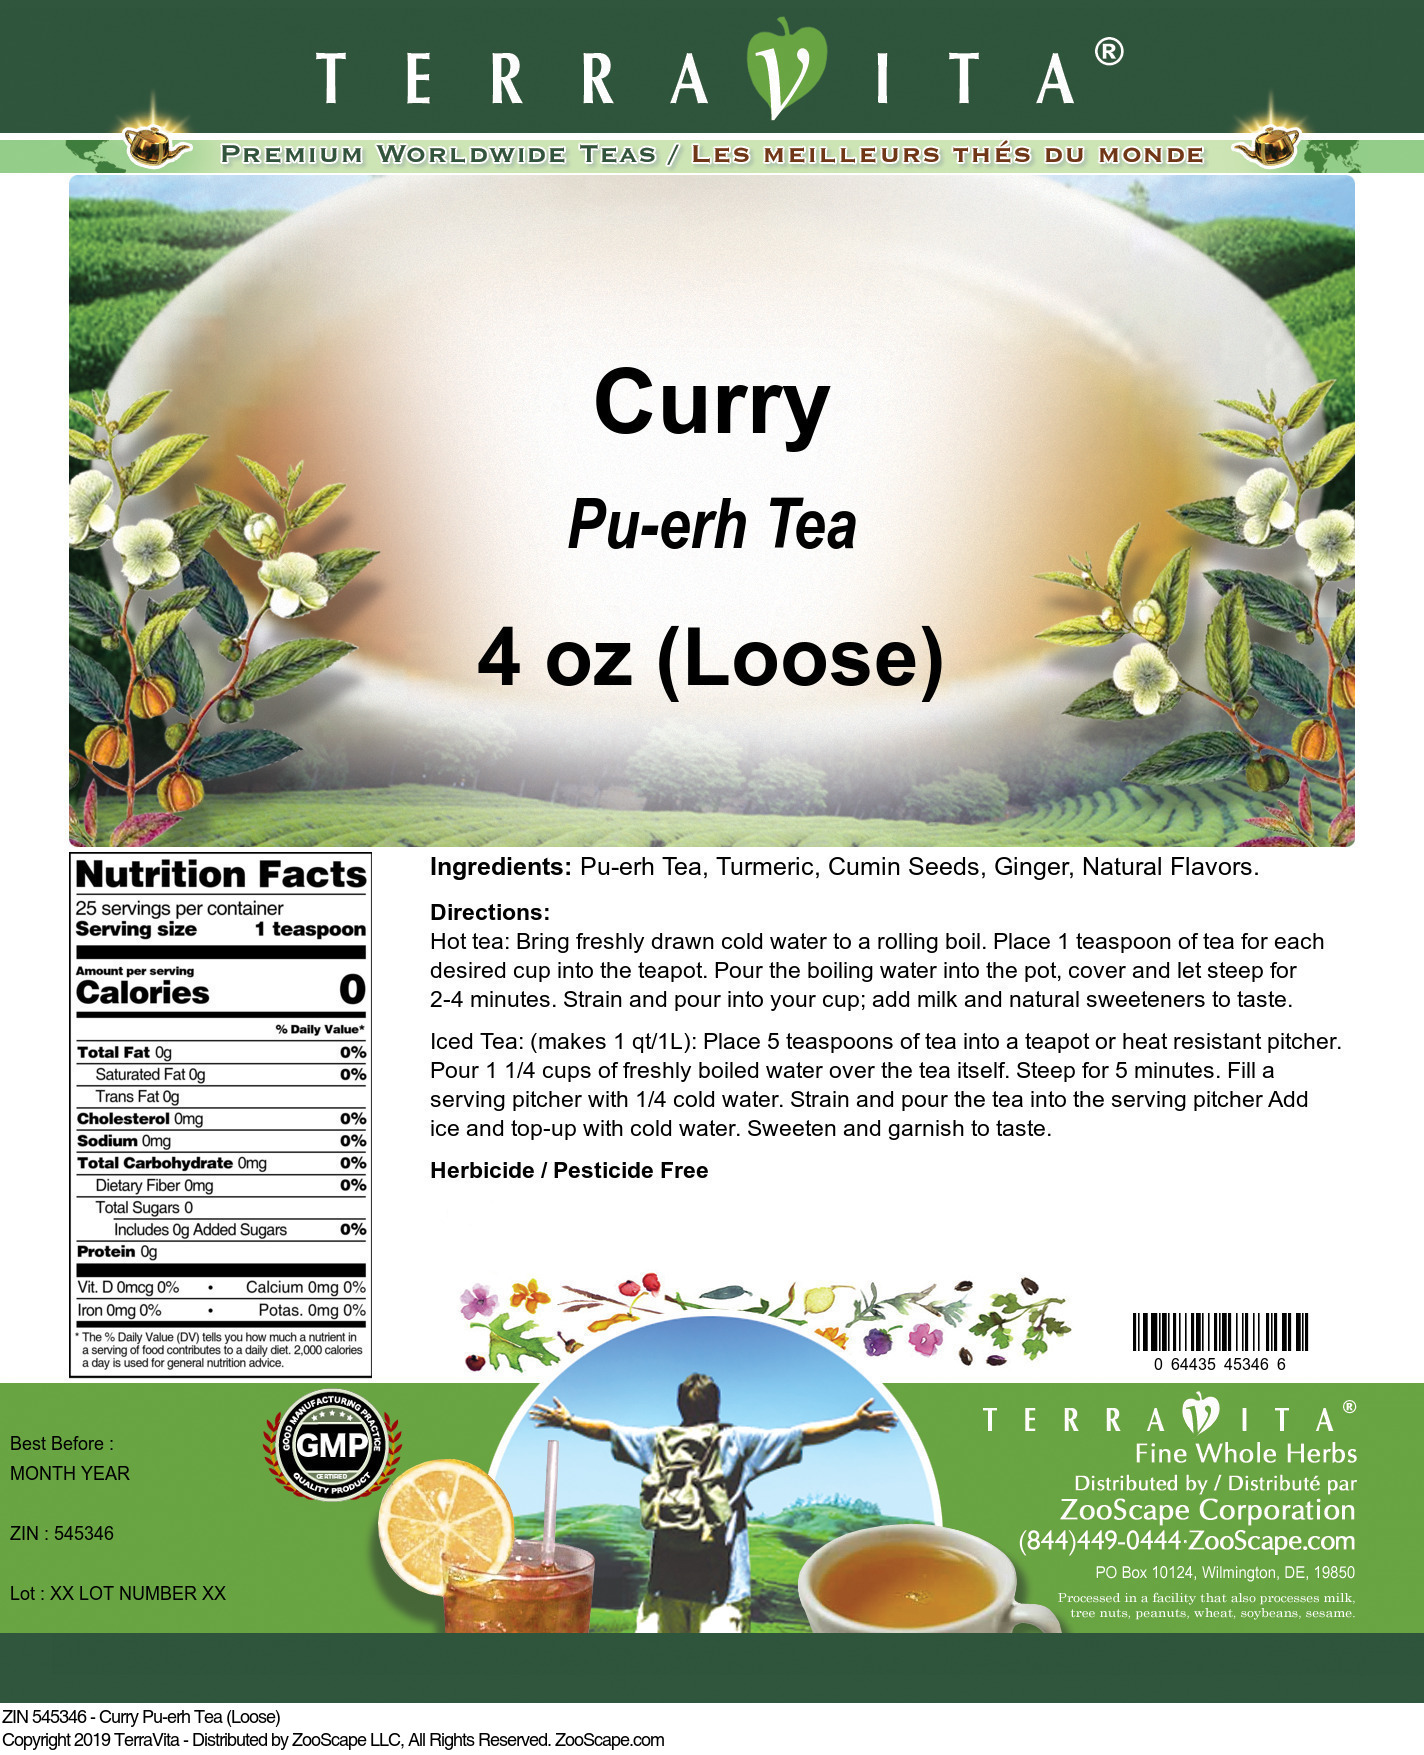 Curry Pu-erh Tea (Loose) - Label